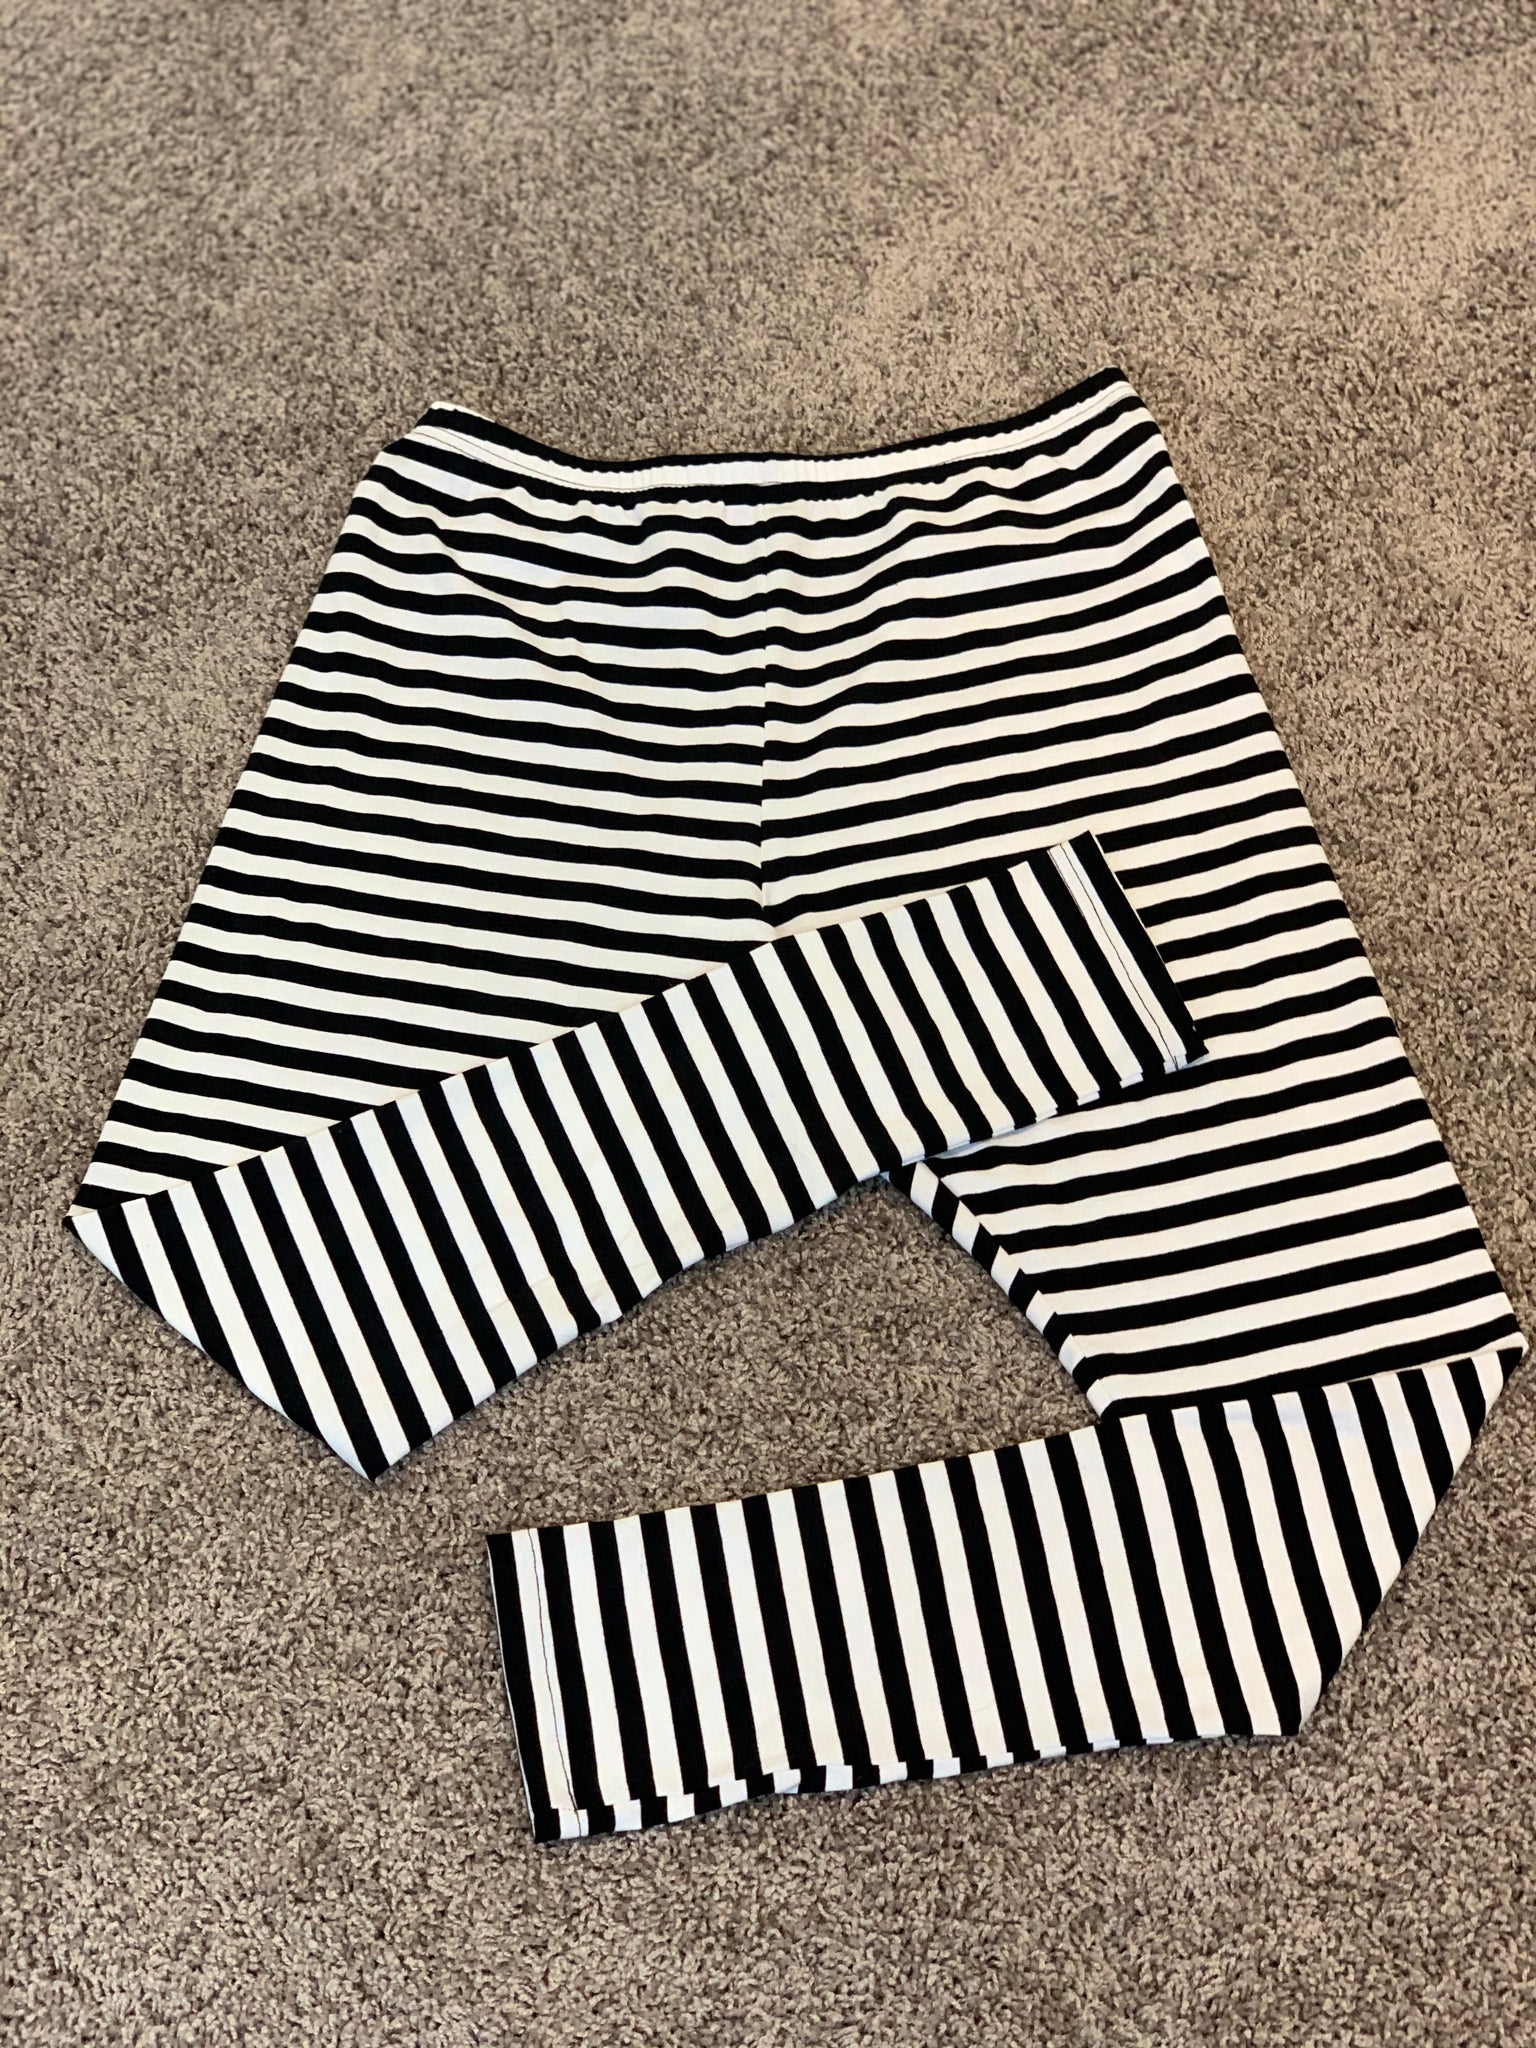 Black and white striped leggings - Long – ontheplusside